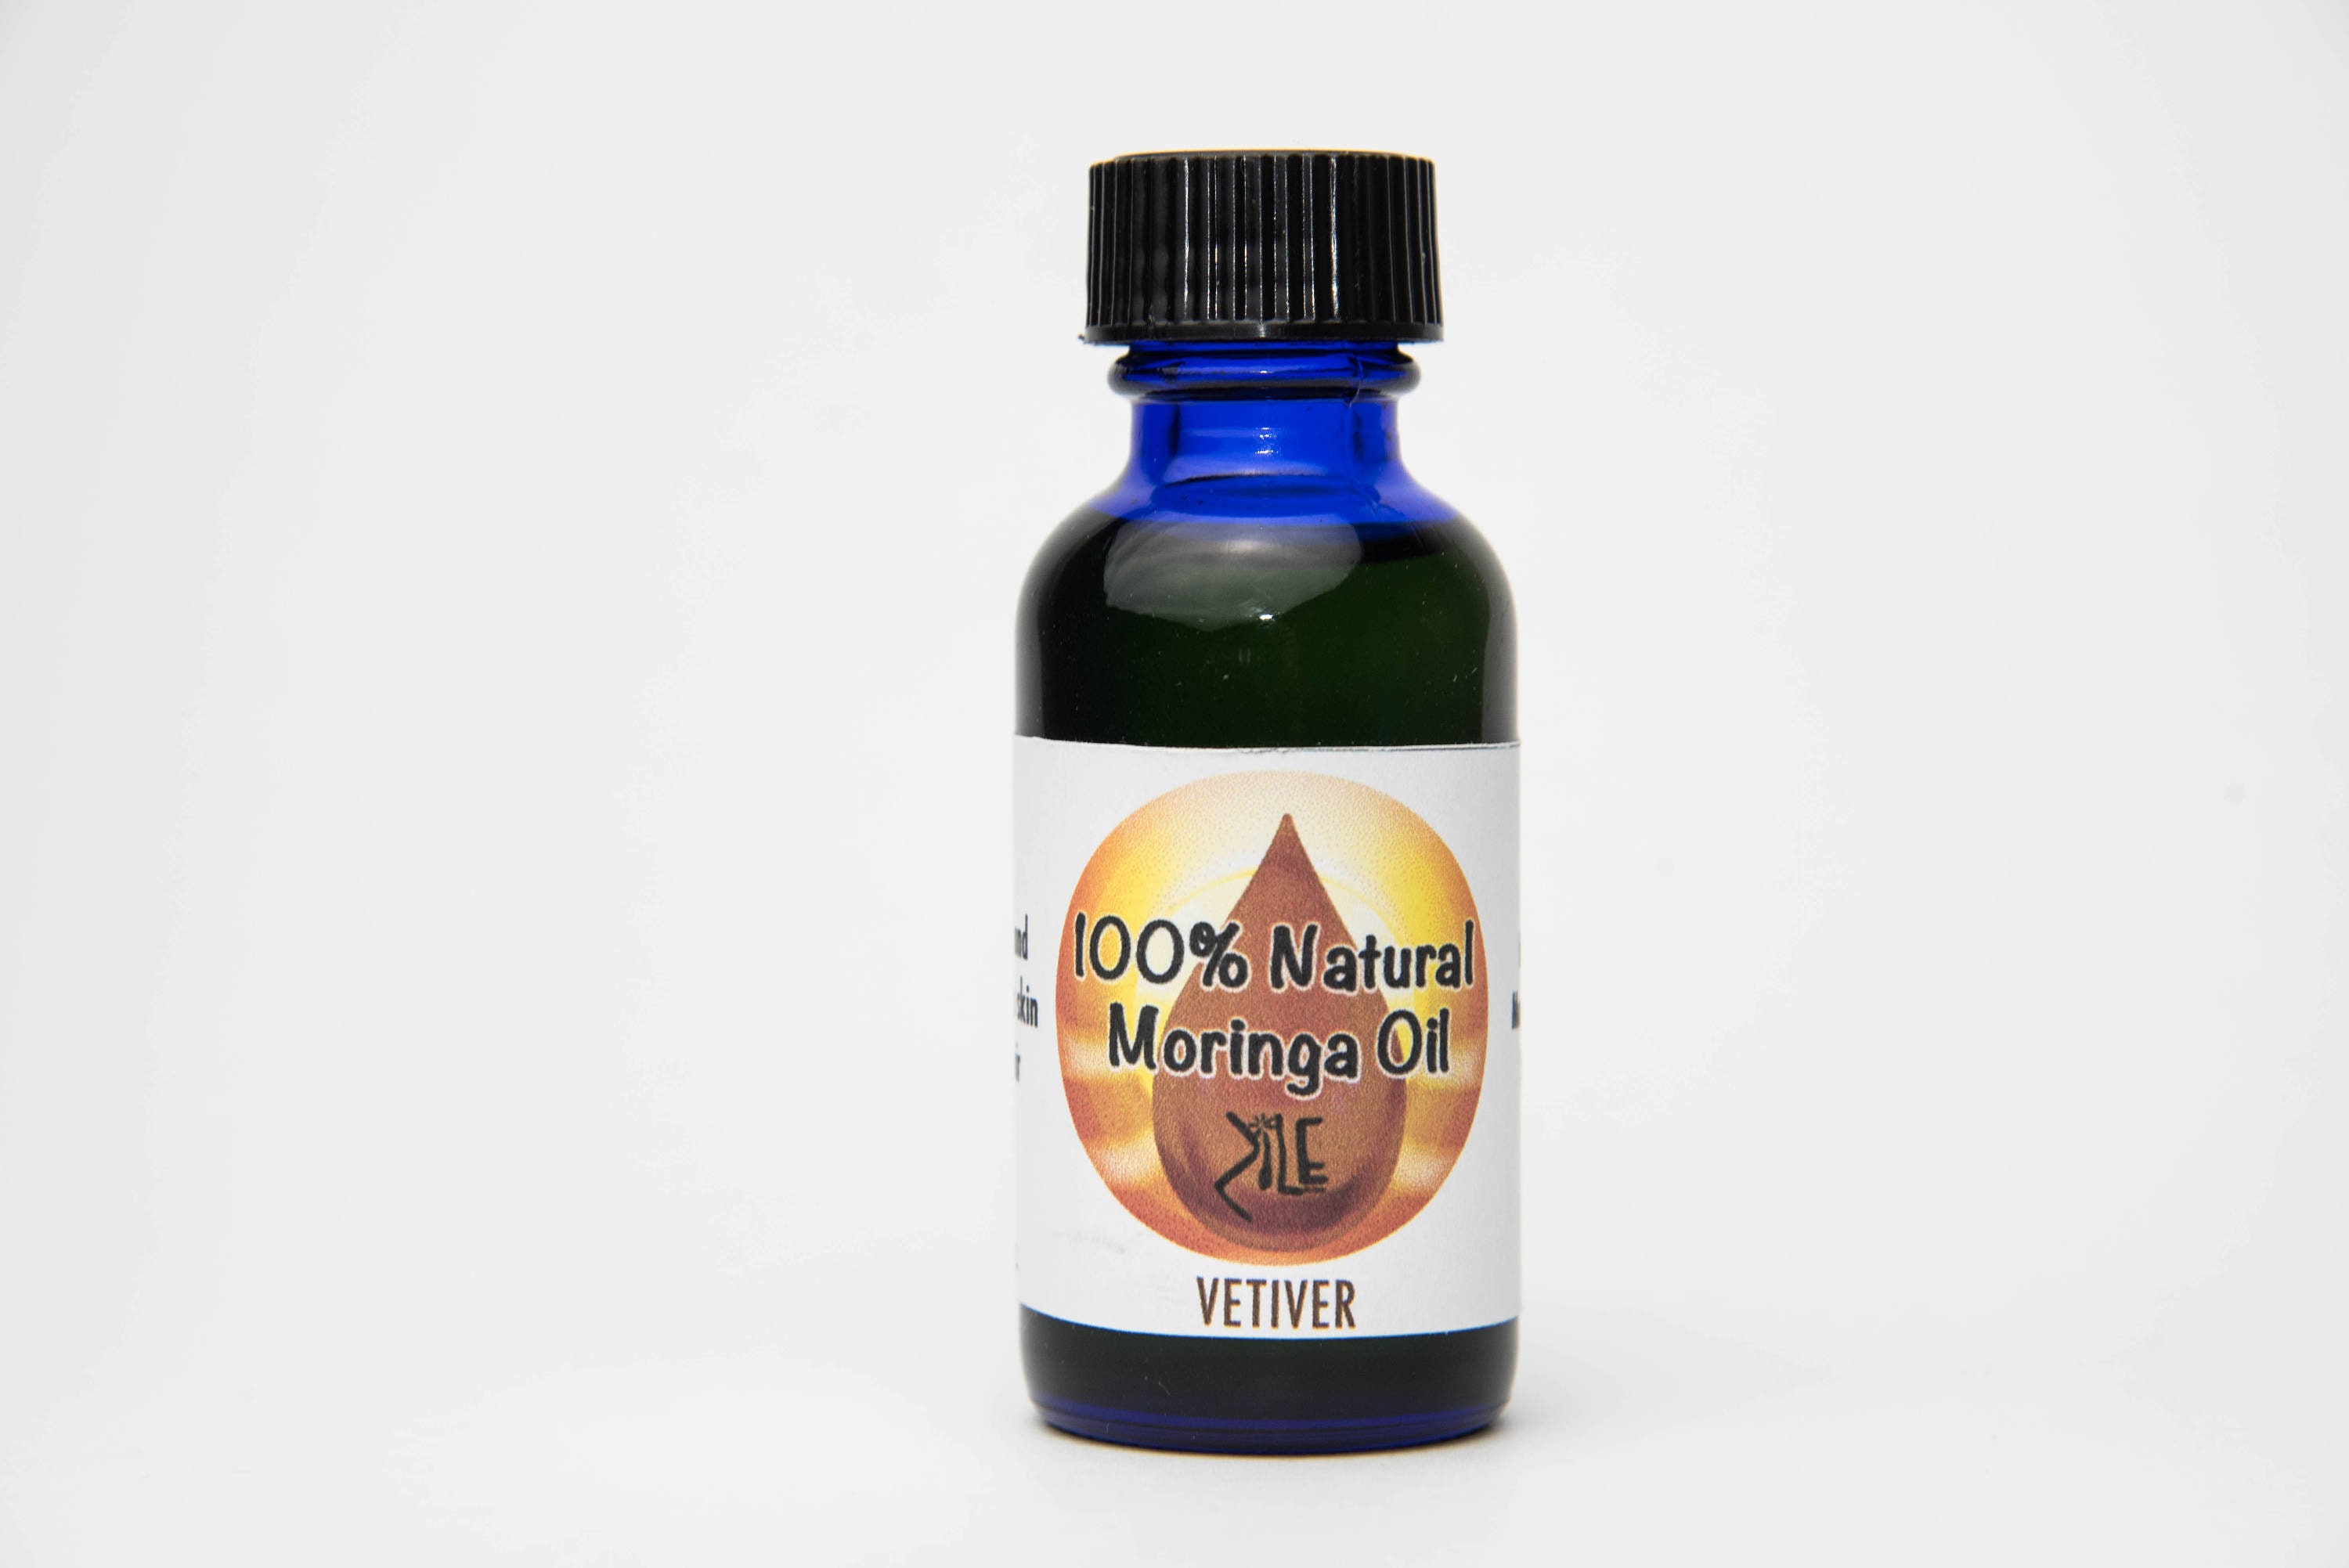 Moringa-Vetiver Oil Blend